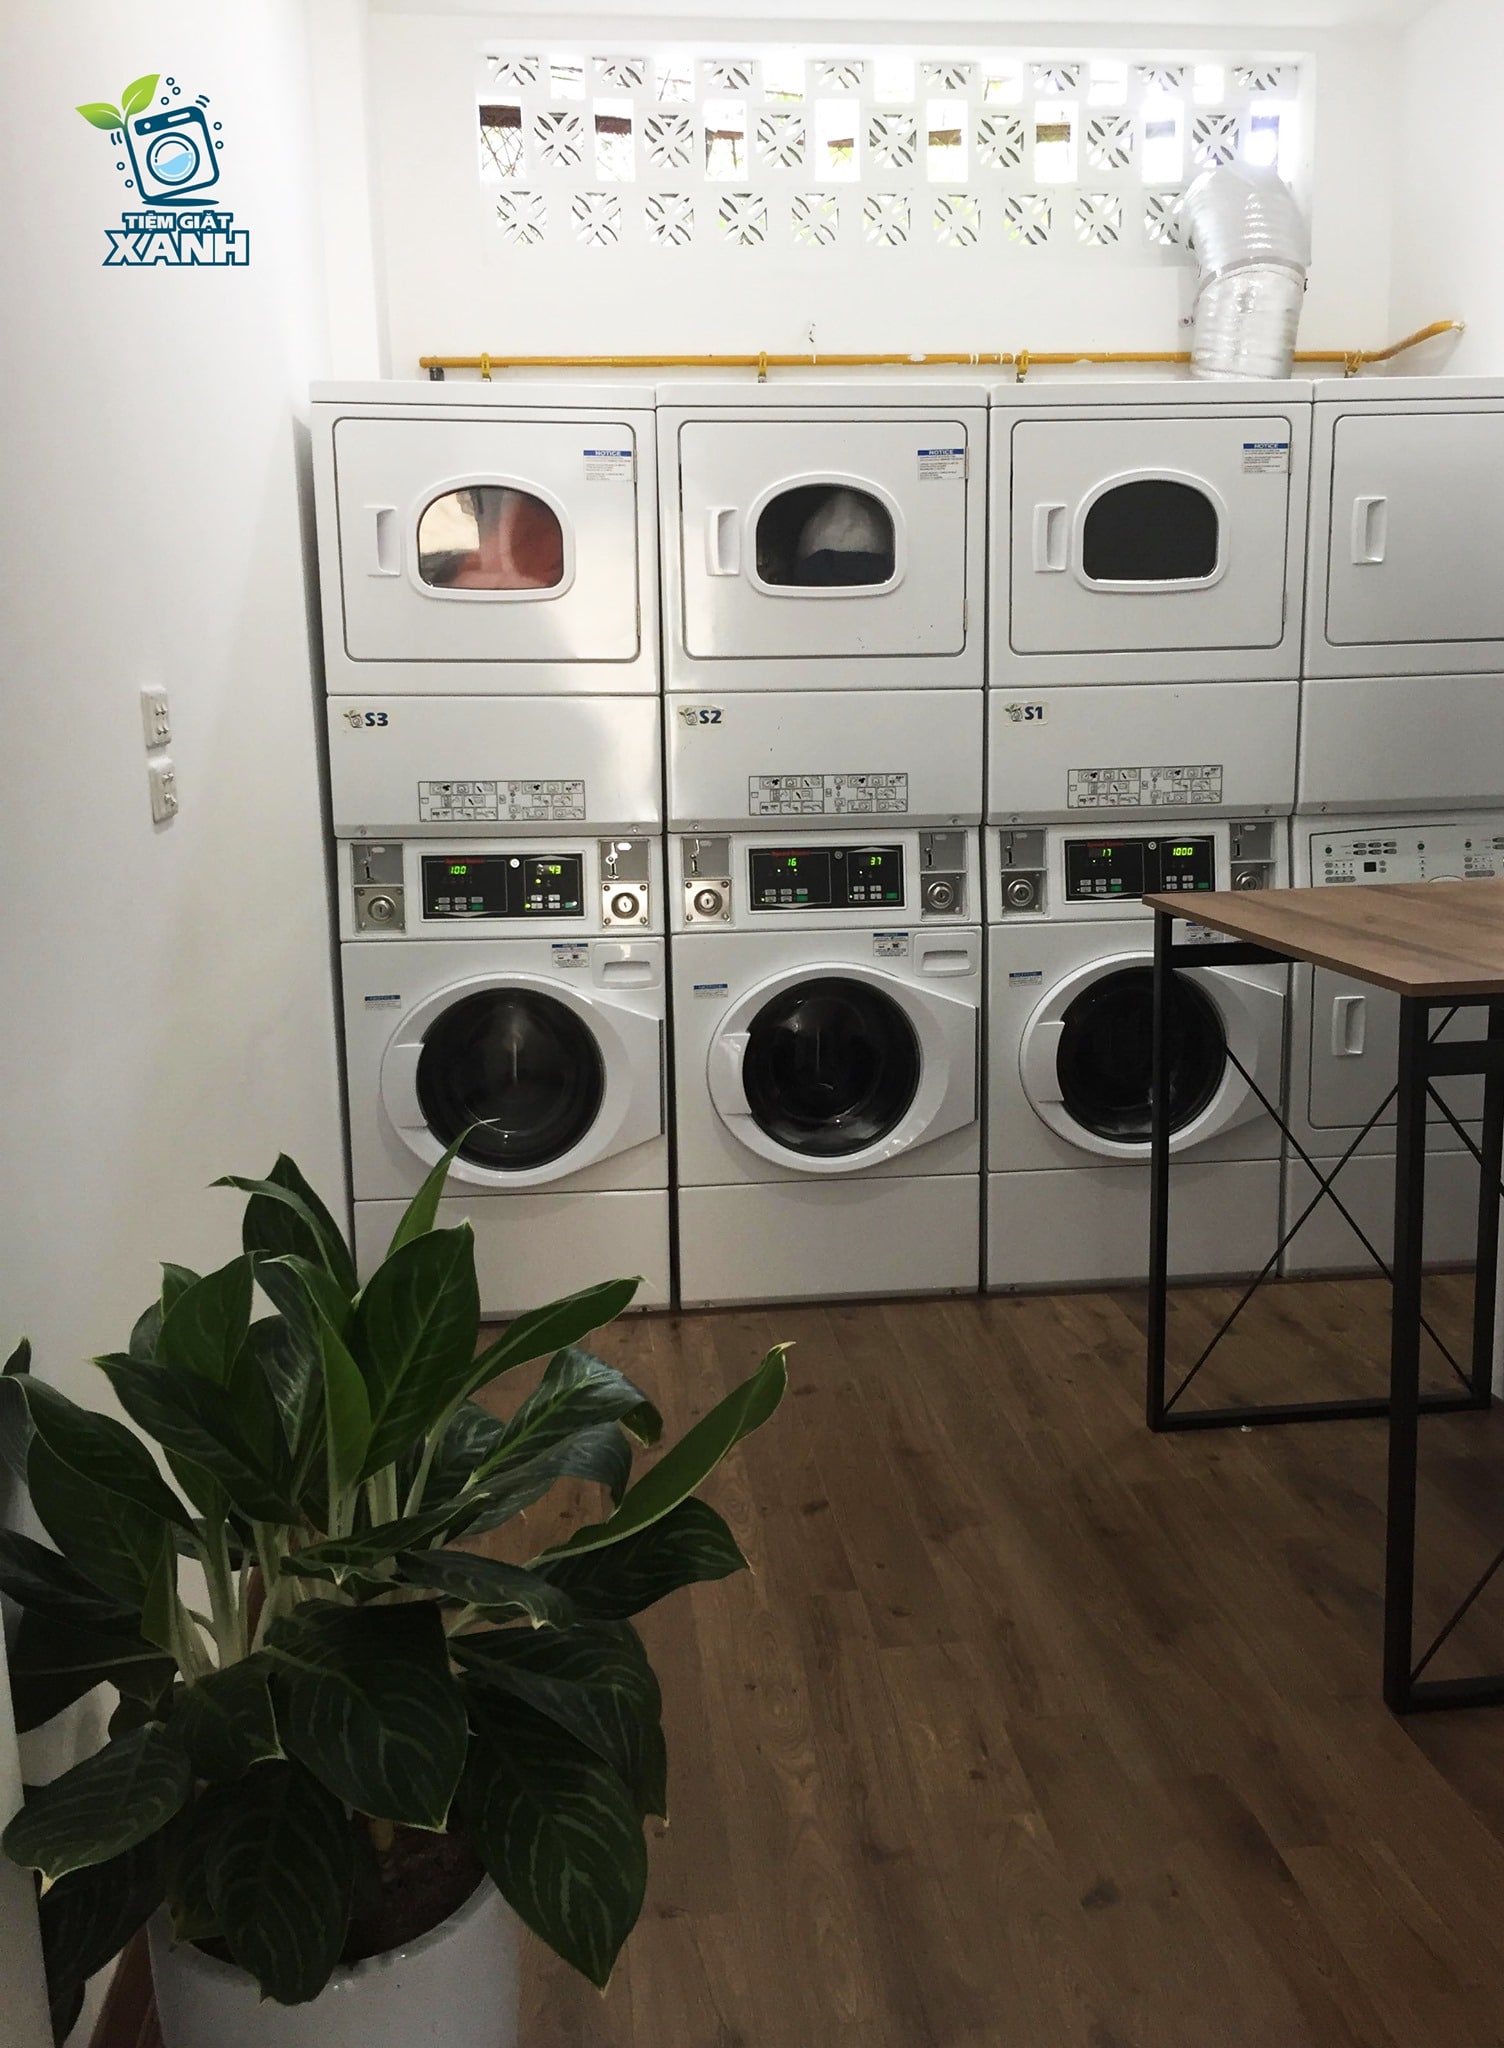 Nên dùng máy sấy quần áo cho tiệm giặt ủi thì tốt ?